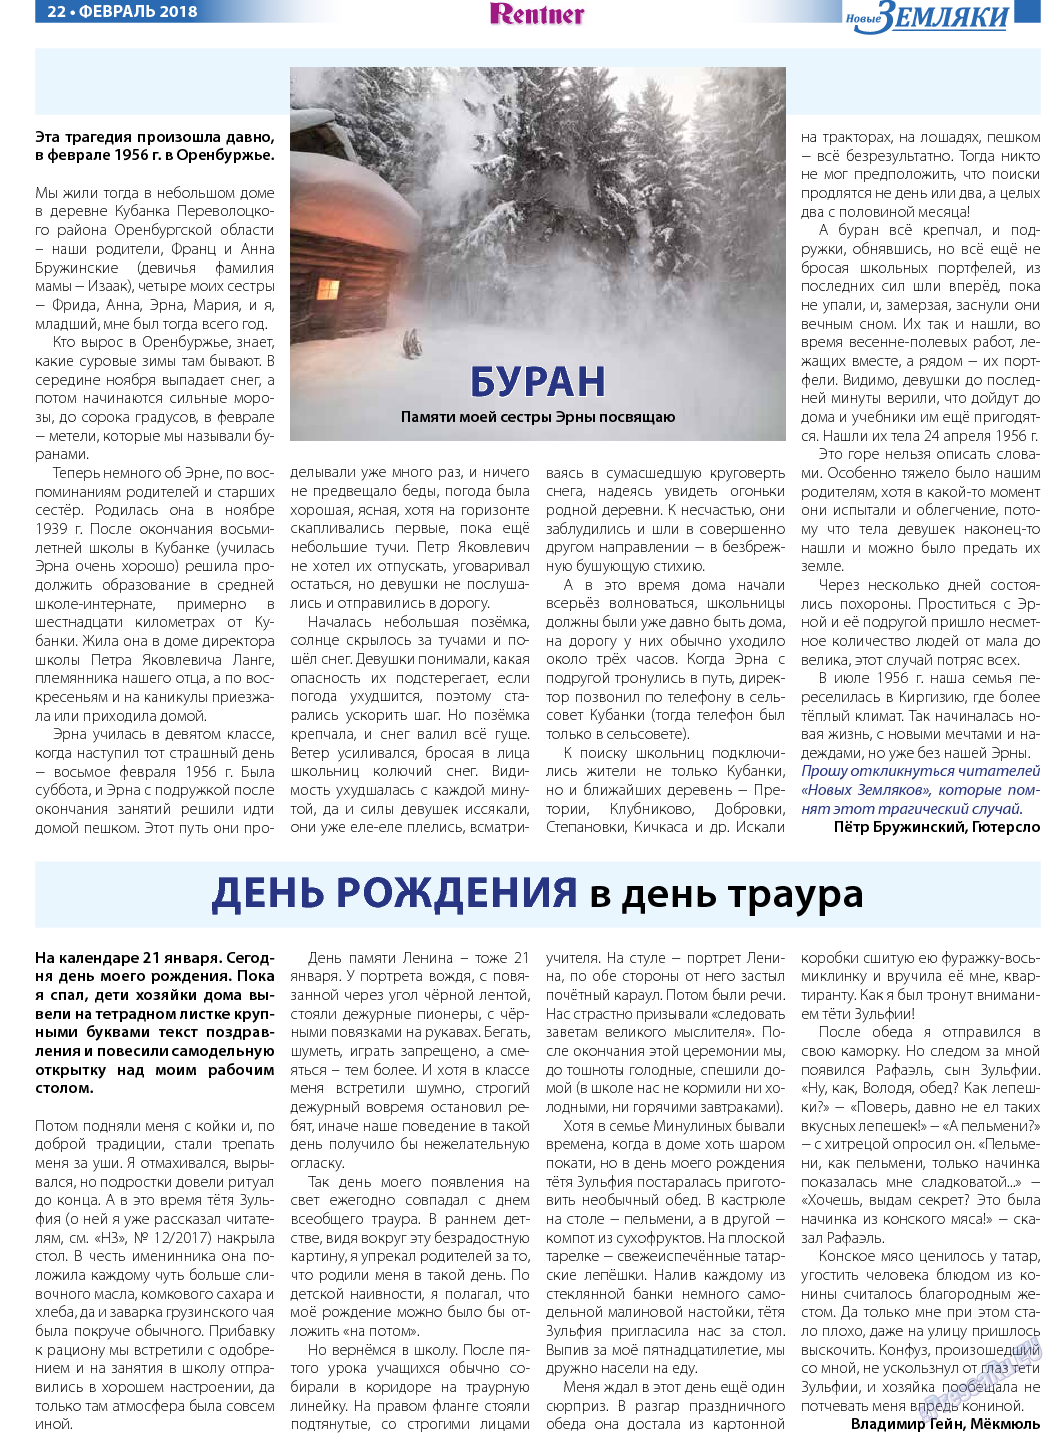 Новые Земляки, газета. 2018 №2 стр.22